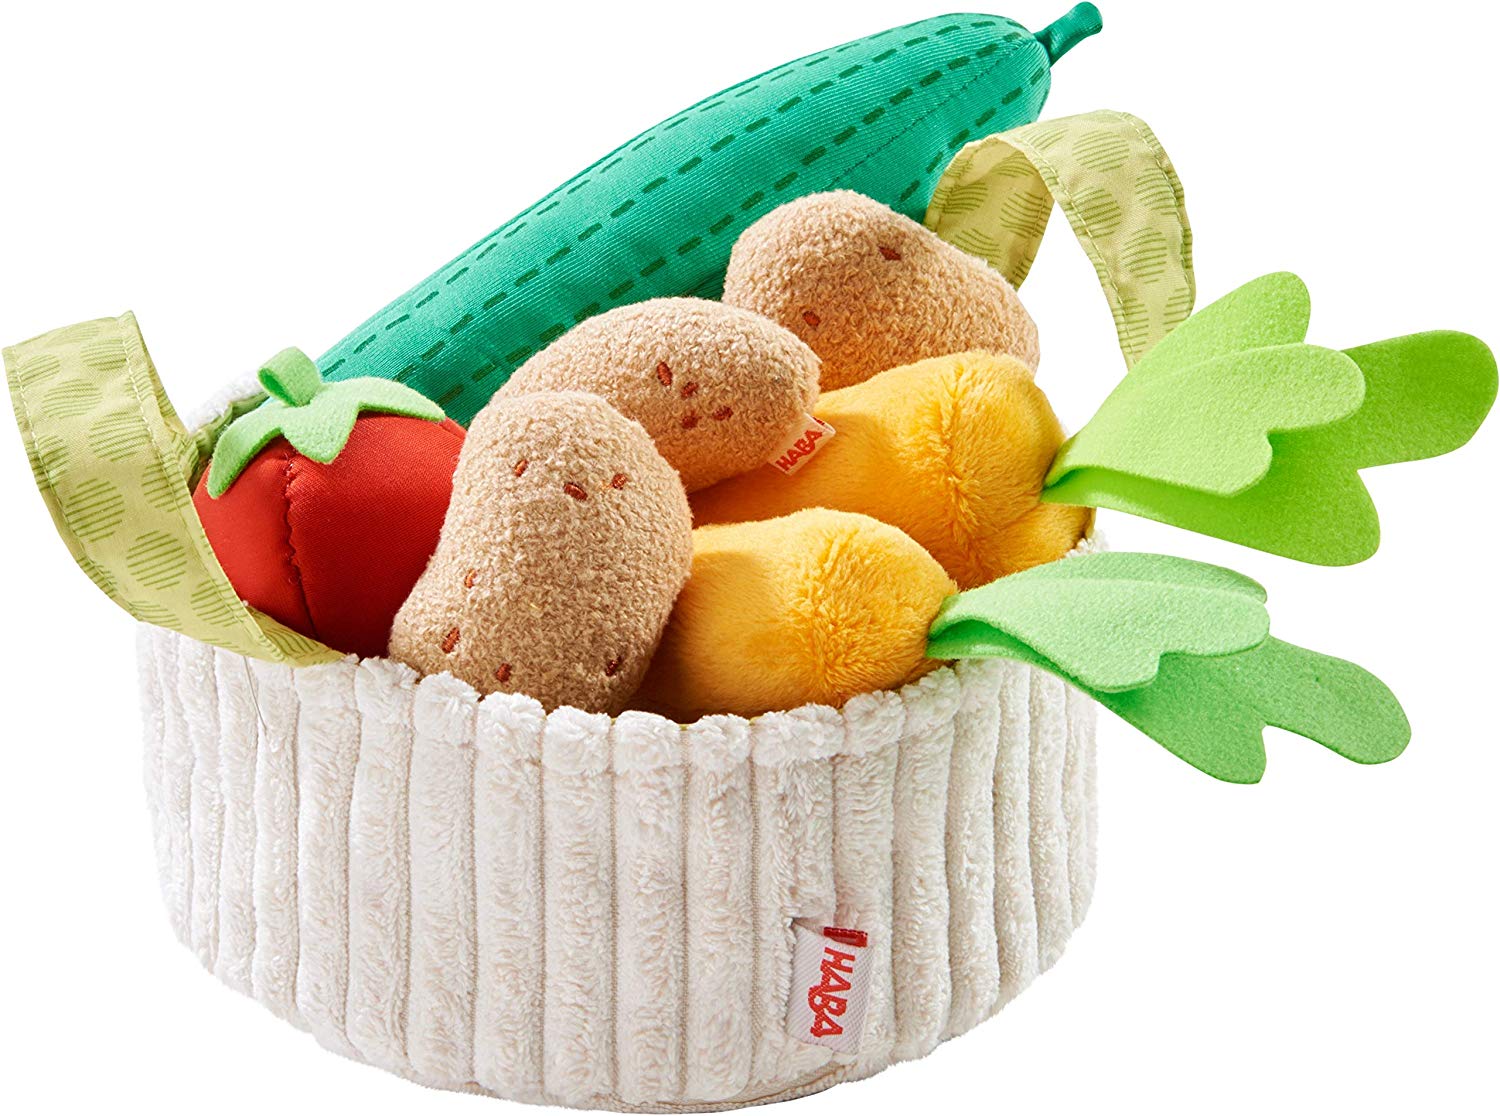 Haba 304230 Vegetable Basket